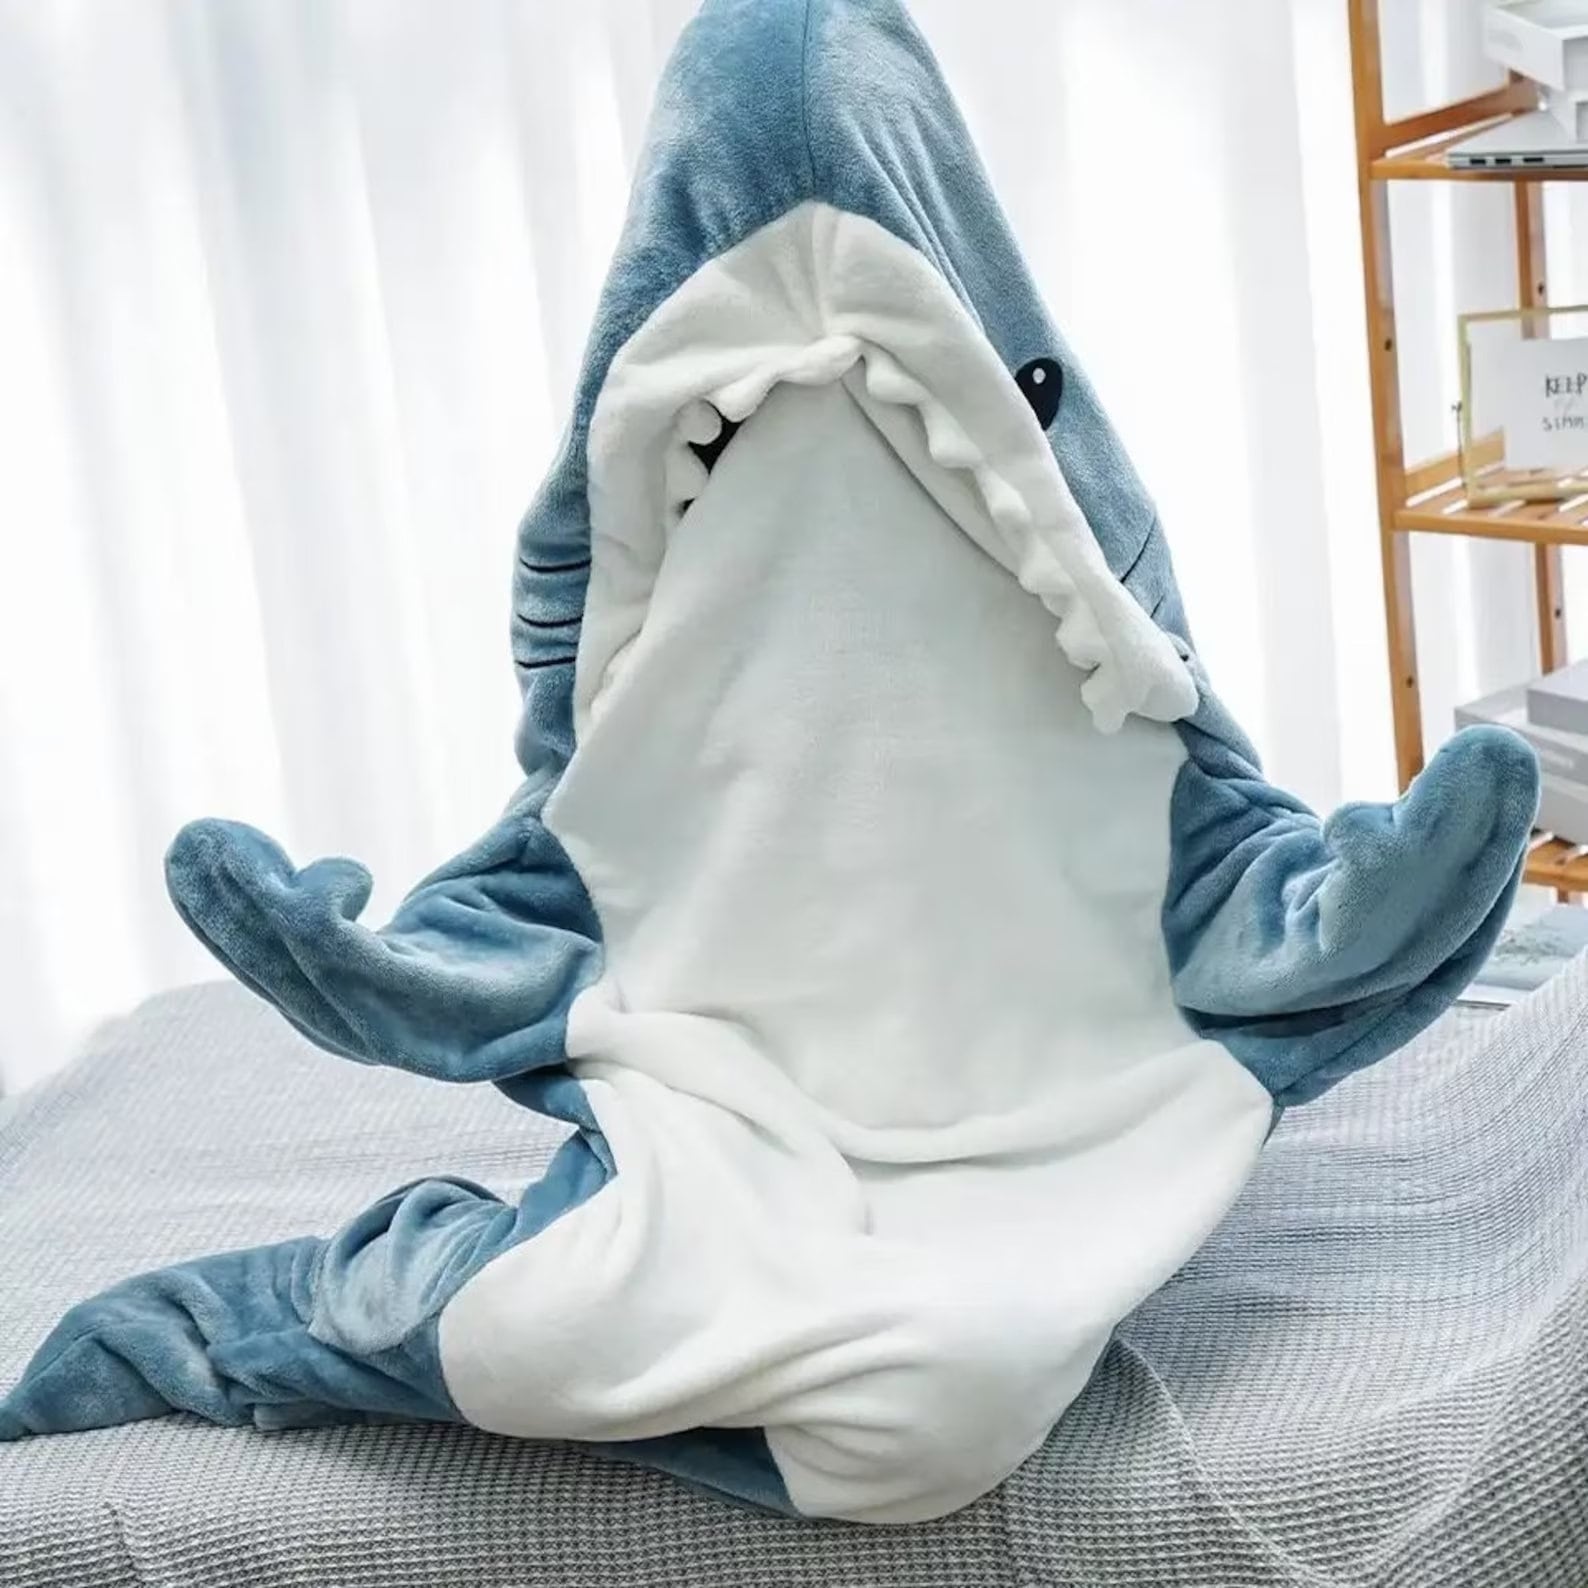 Pijama de tiburón adulto cosplay adulto tiburón de una pieza pijama de  animal cosplay disfraz de tiburón tiburón burón saco de dormir regalo de  halloween